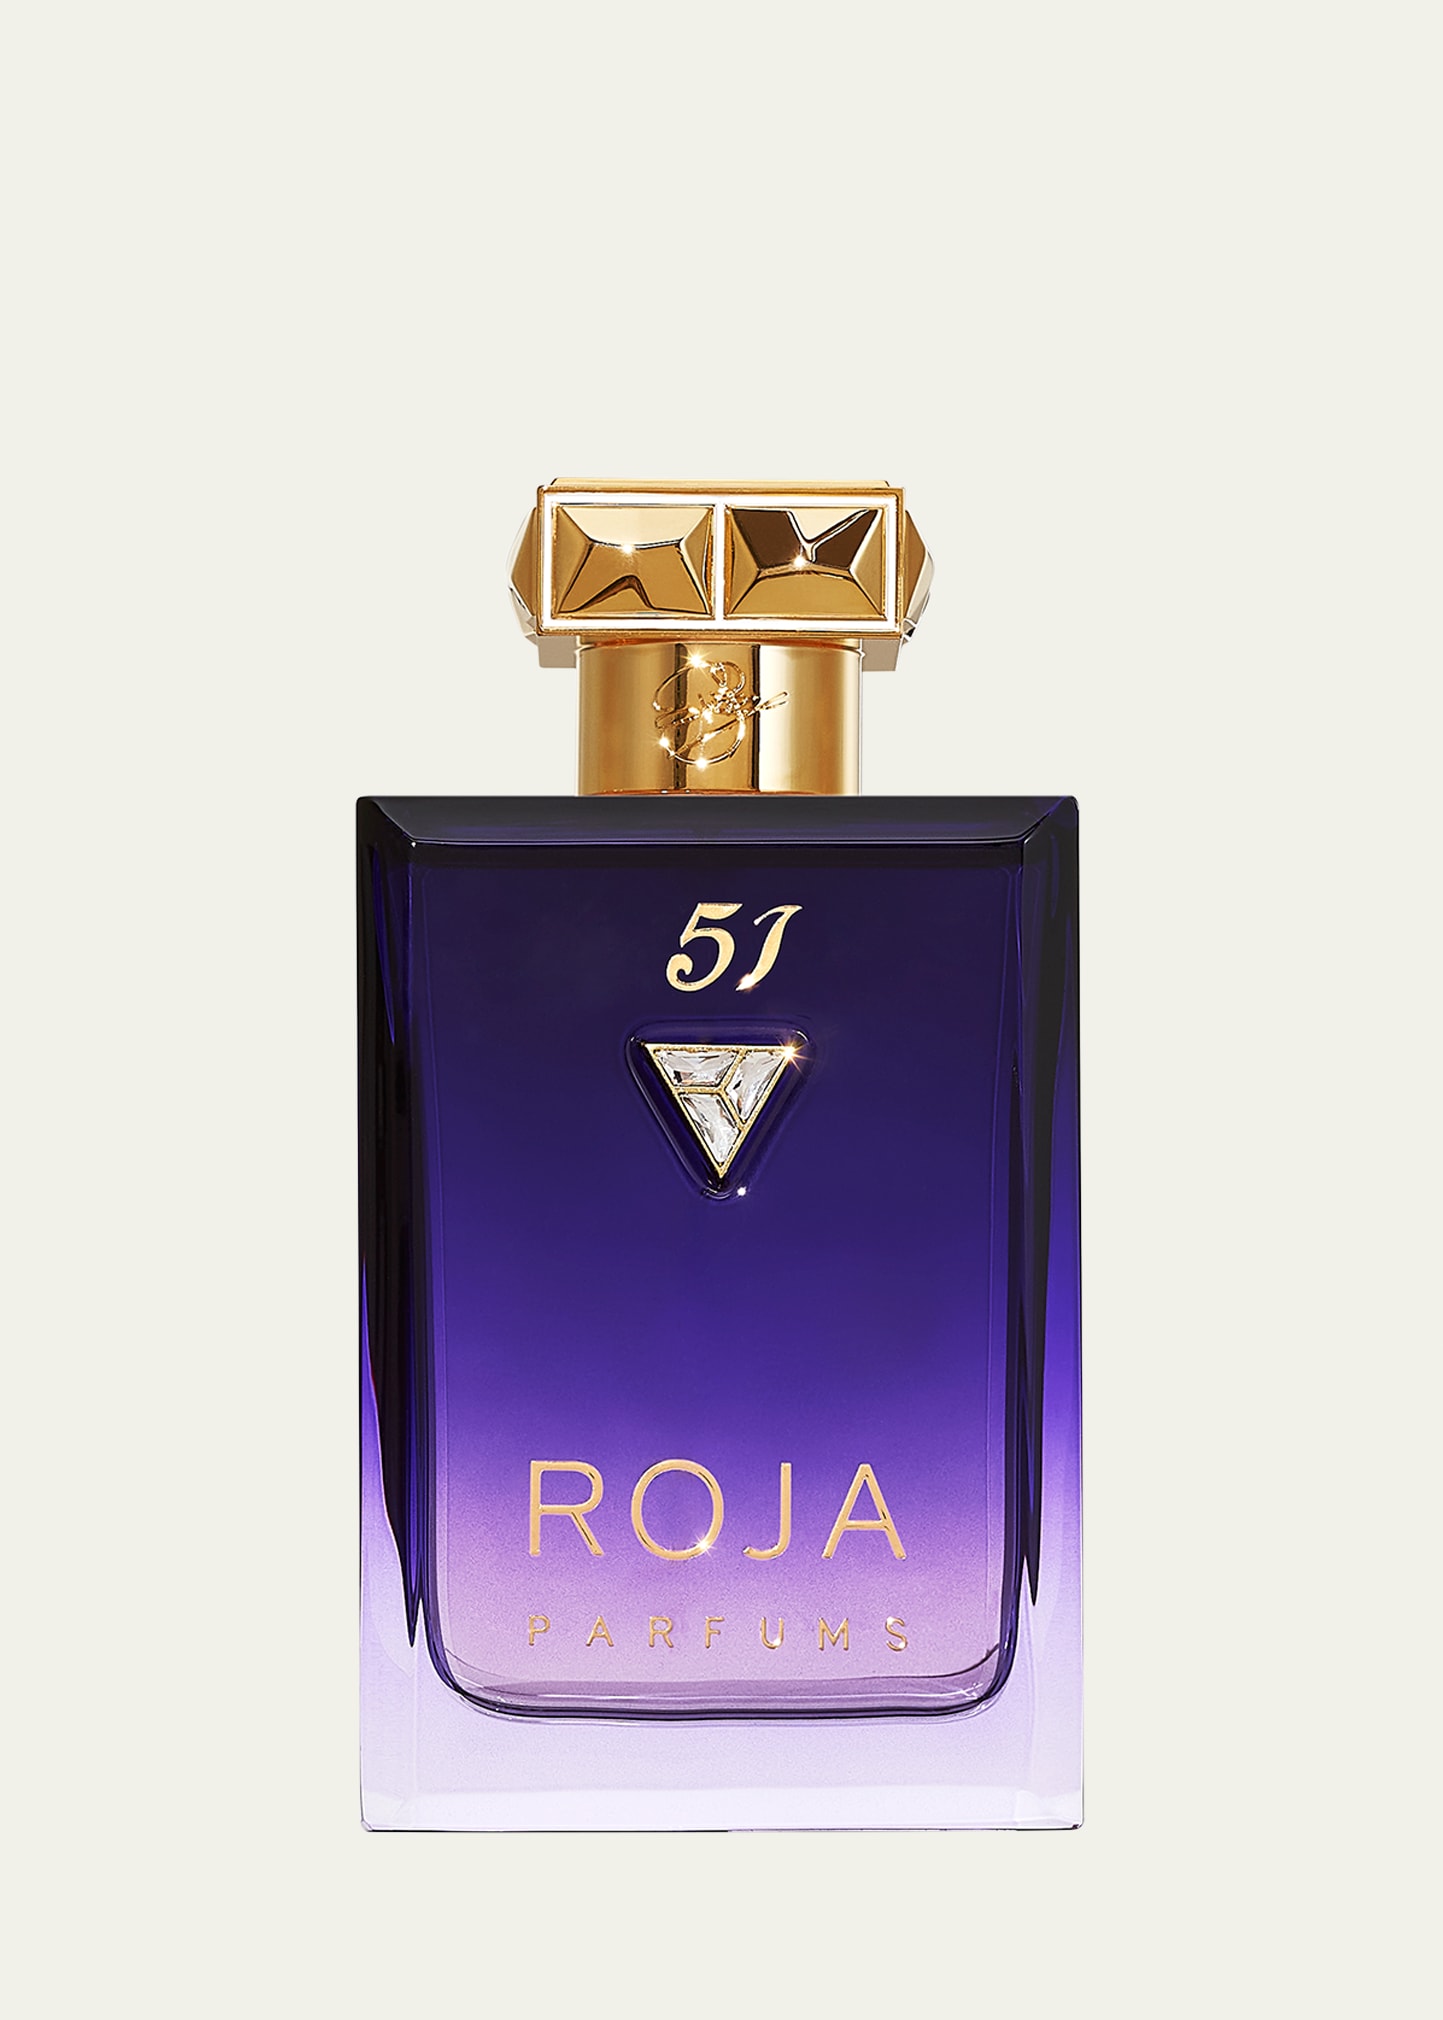 3.4 oz. 51 Essence de Parfum